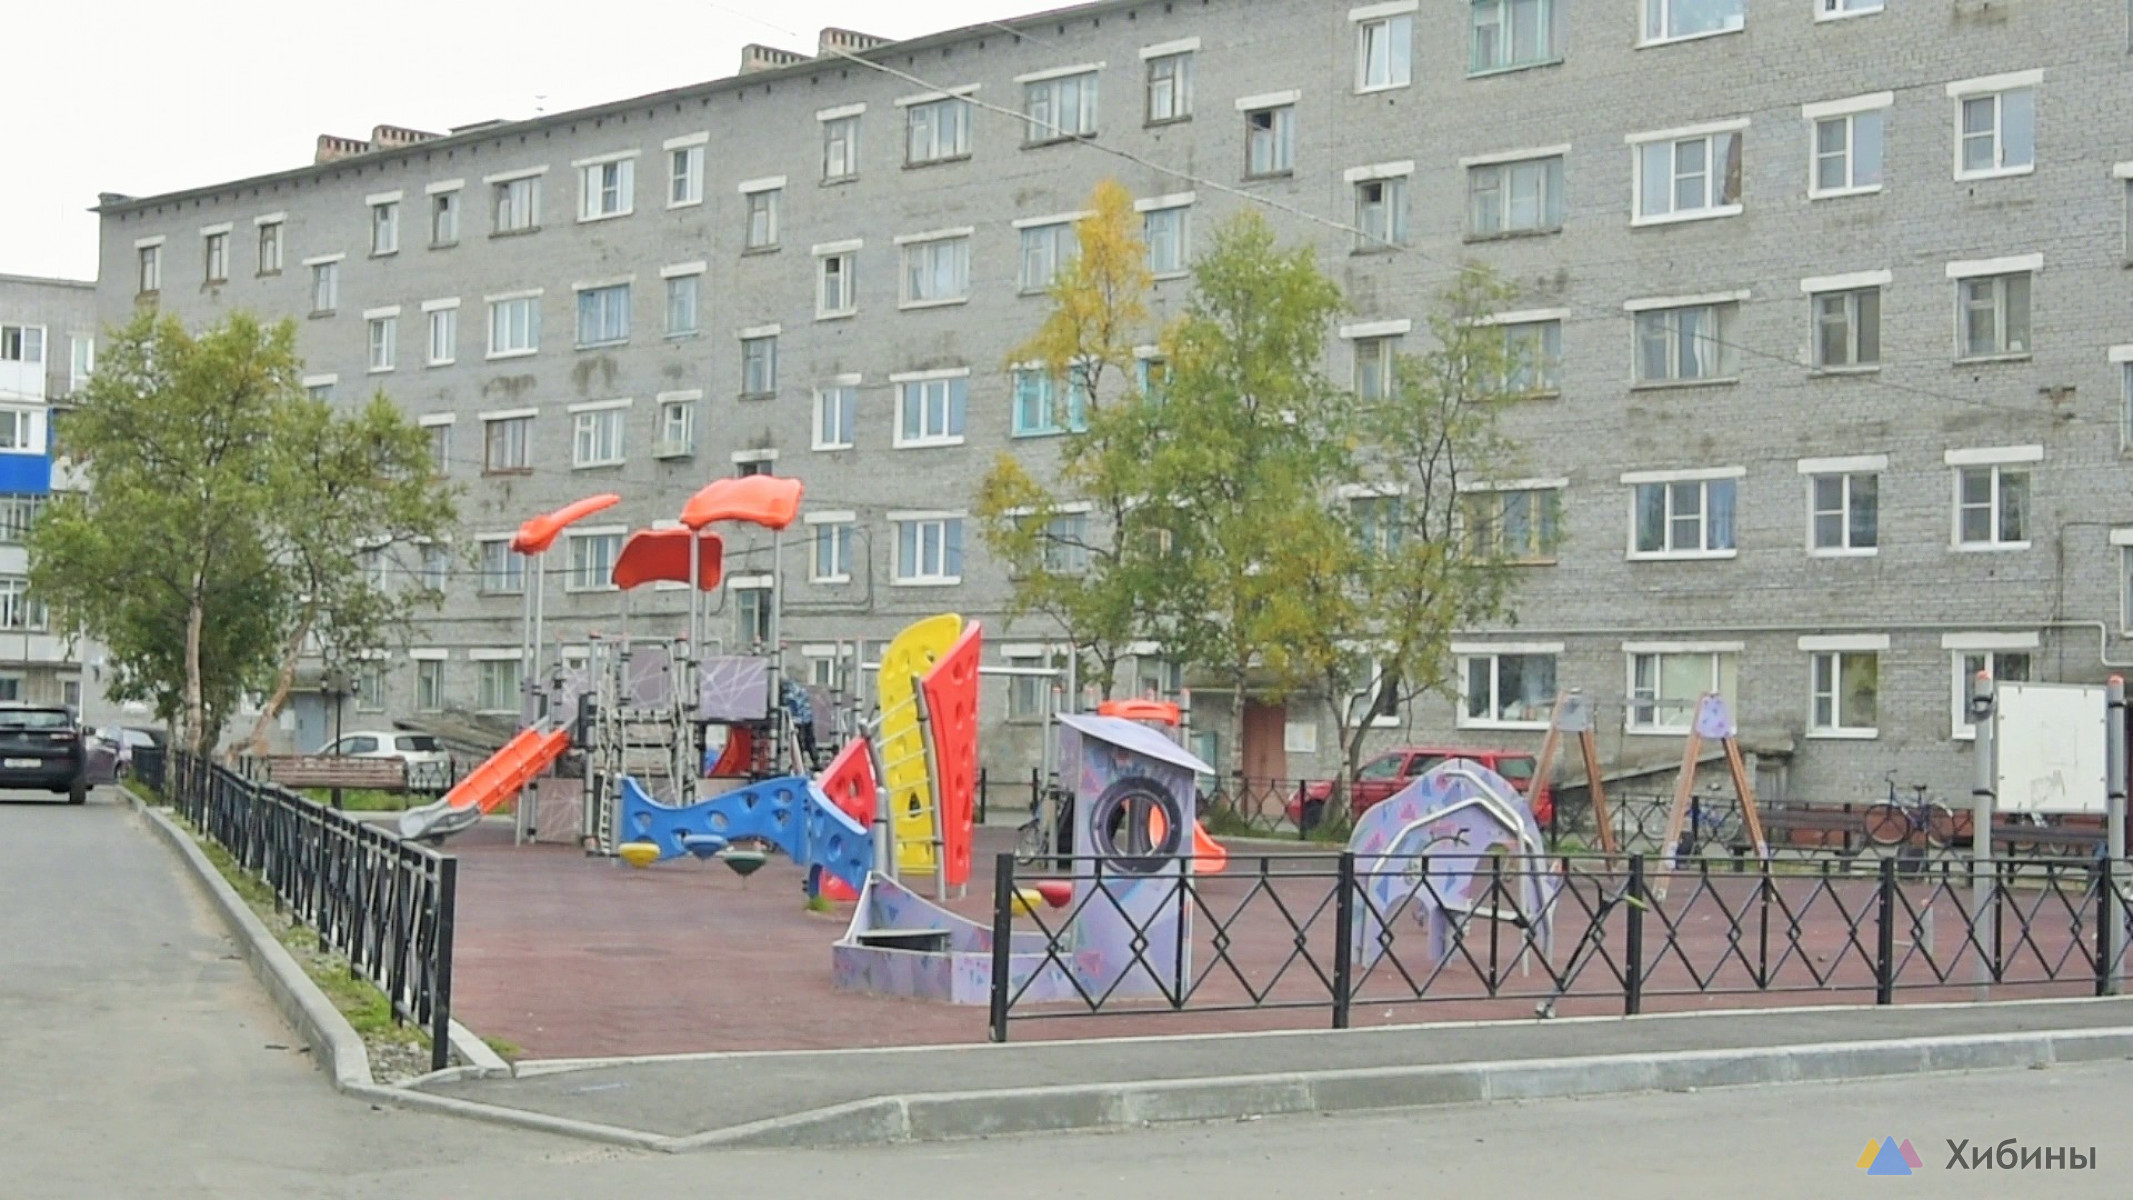 Власти Мурманска объяснили, почему на Орликовой, 7 детская площадка в таком состоянии